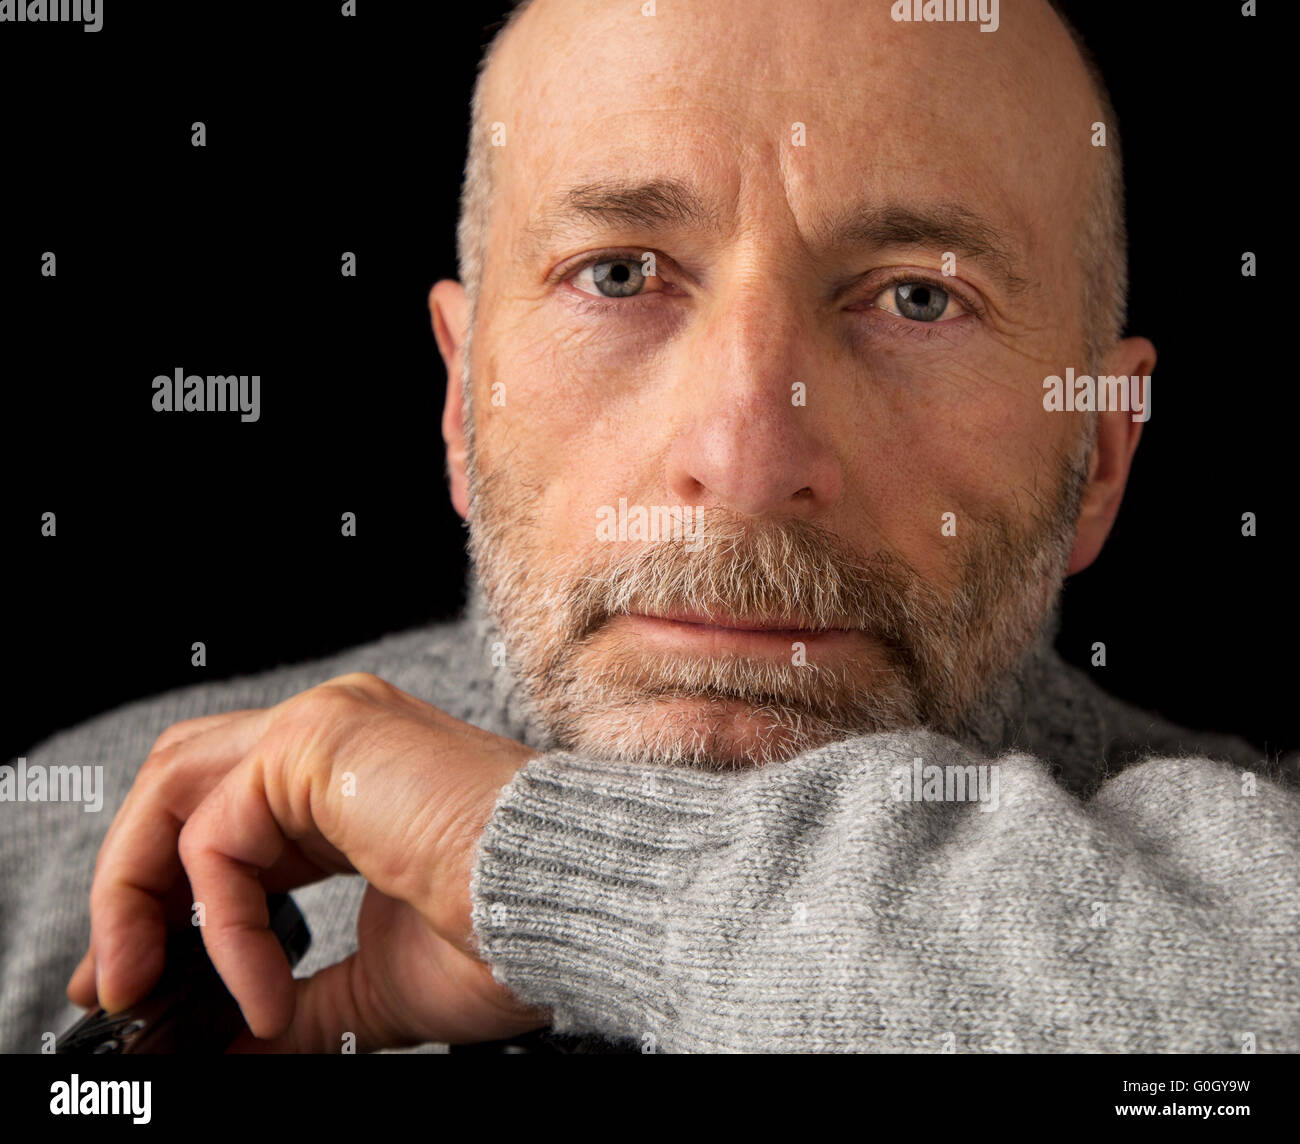 zuversichtlich und positiv 60 Jahre alten Mann mit Bart - ein Kopfschuss vor schwarzem Hintergrund Stockfoto